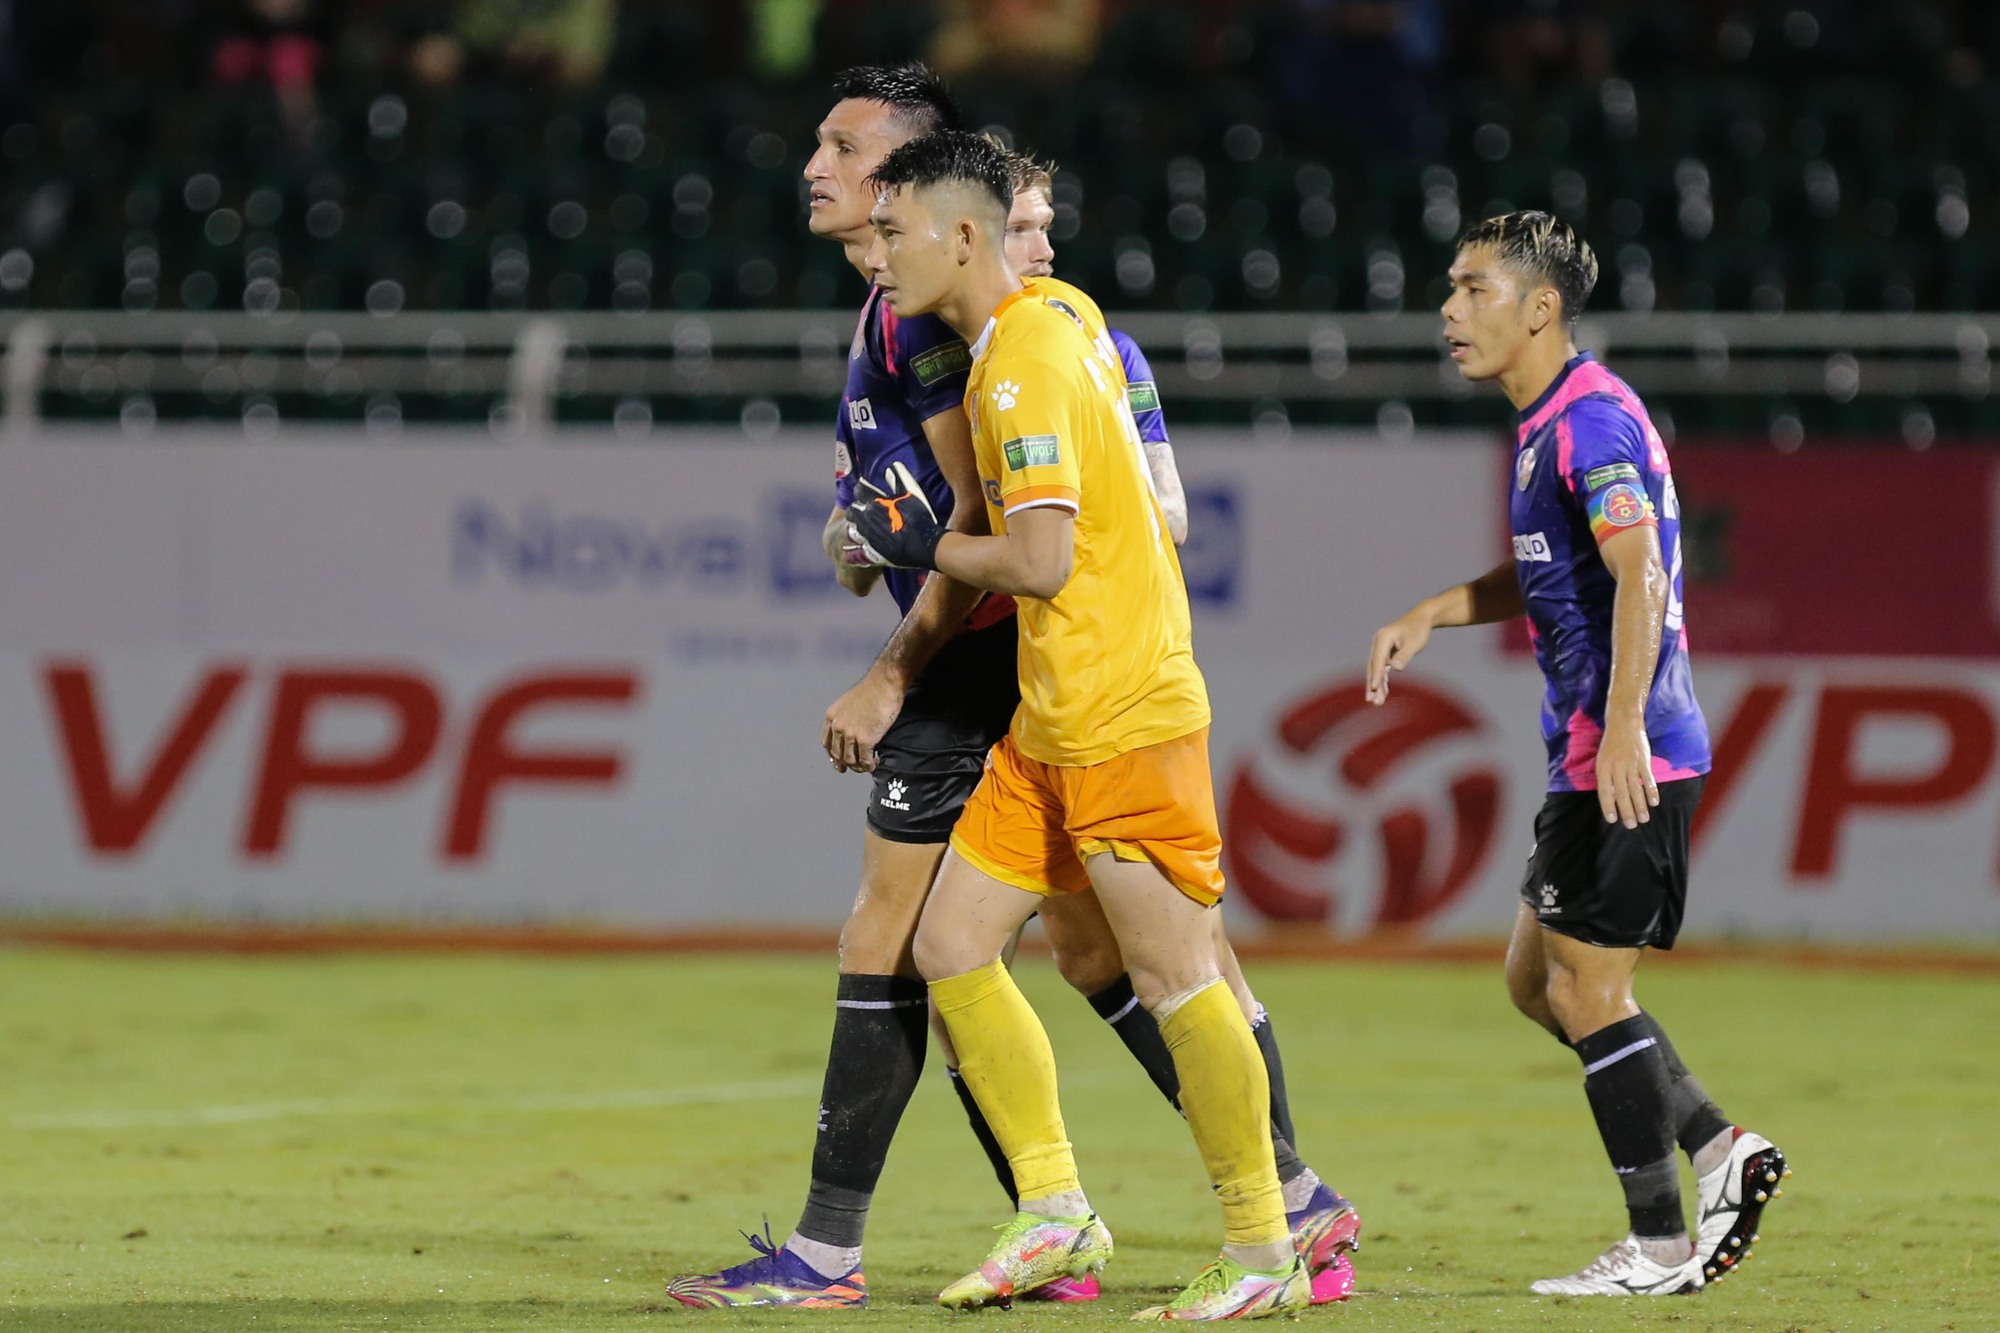 Đỗ Merlo bật khóc sau khi lấy công chuộc tội giúp Sài Gòn FC chiến thắng - Ảnh 4.